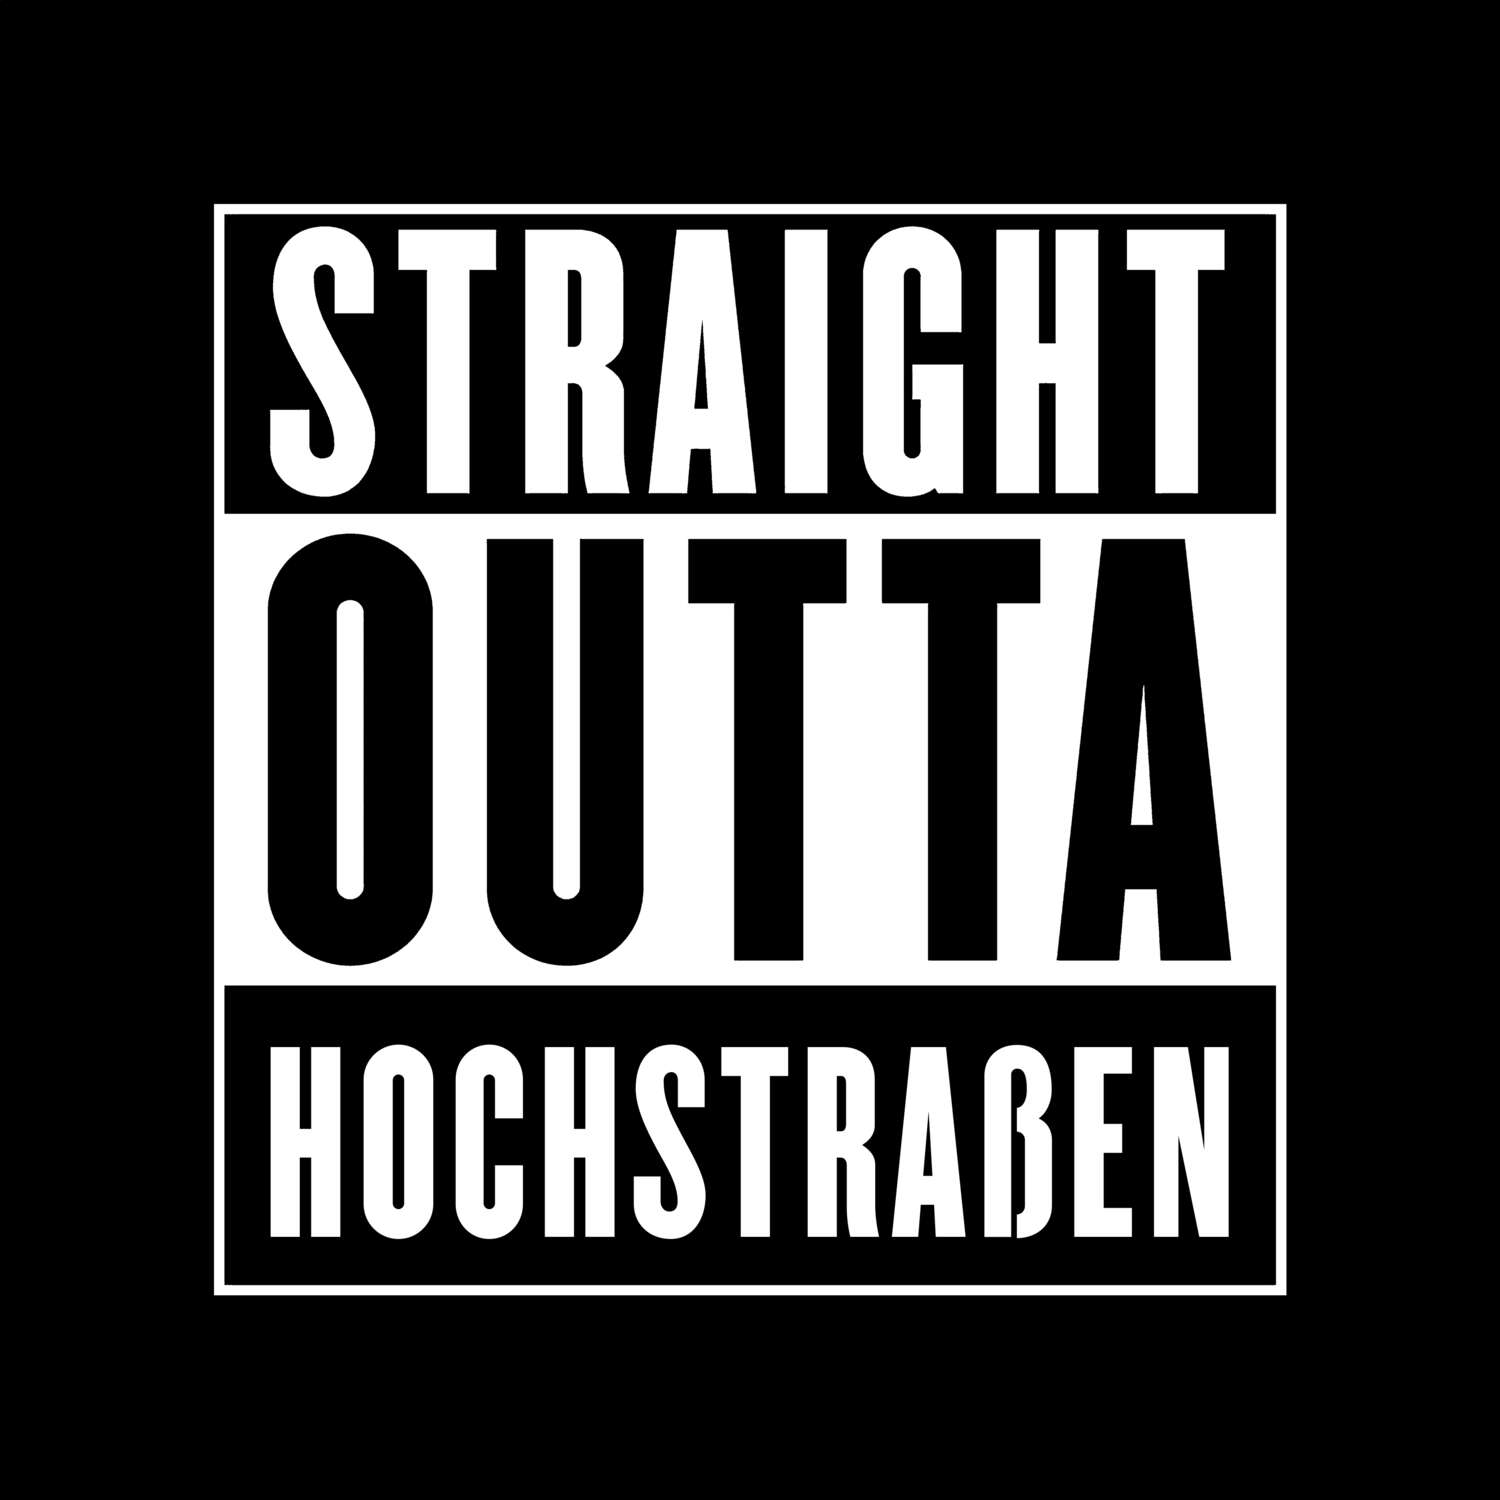 Hochstraßen T-Shirt »Straight Outta«